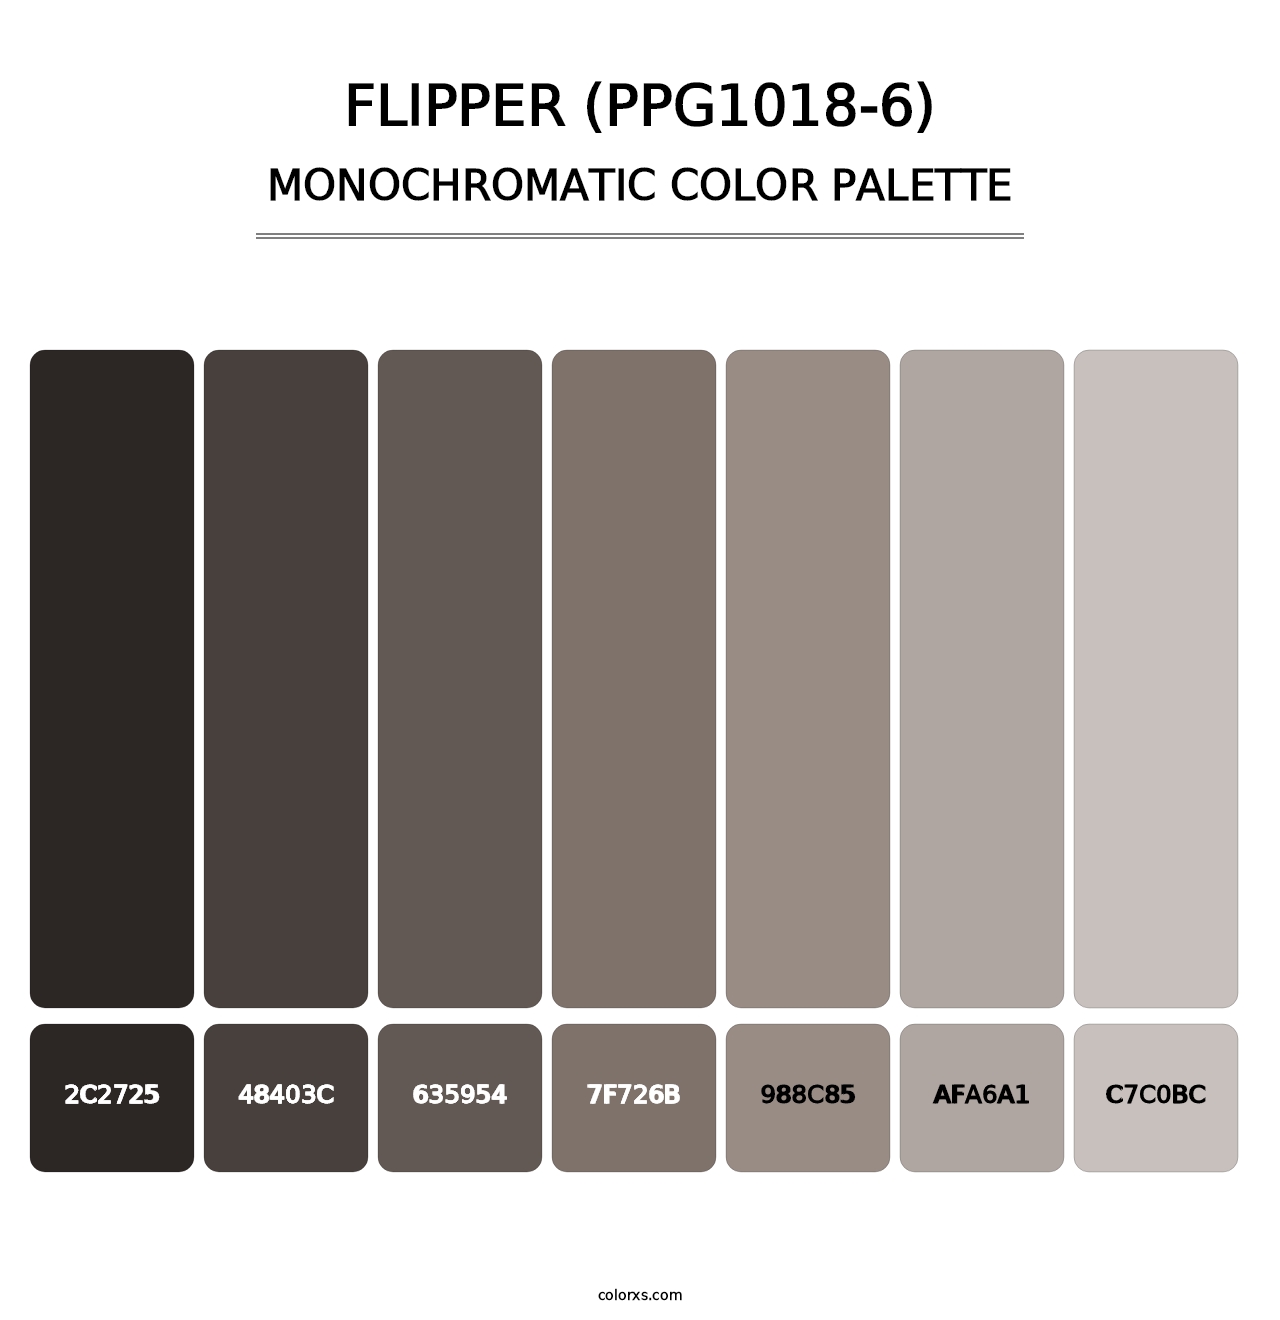 Flipper (PPG1018-6) - Monochromatic Color Palette